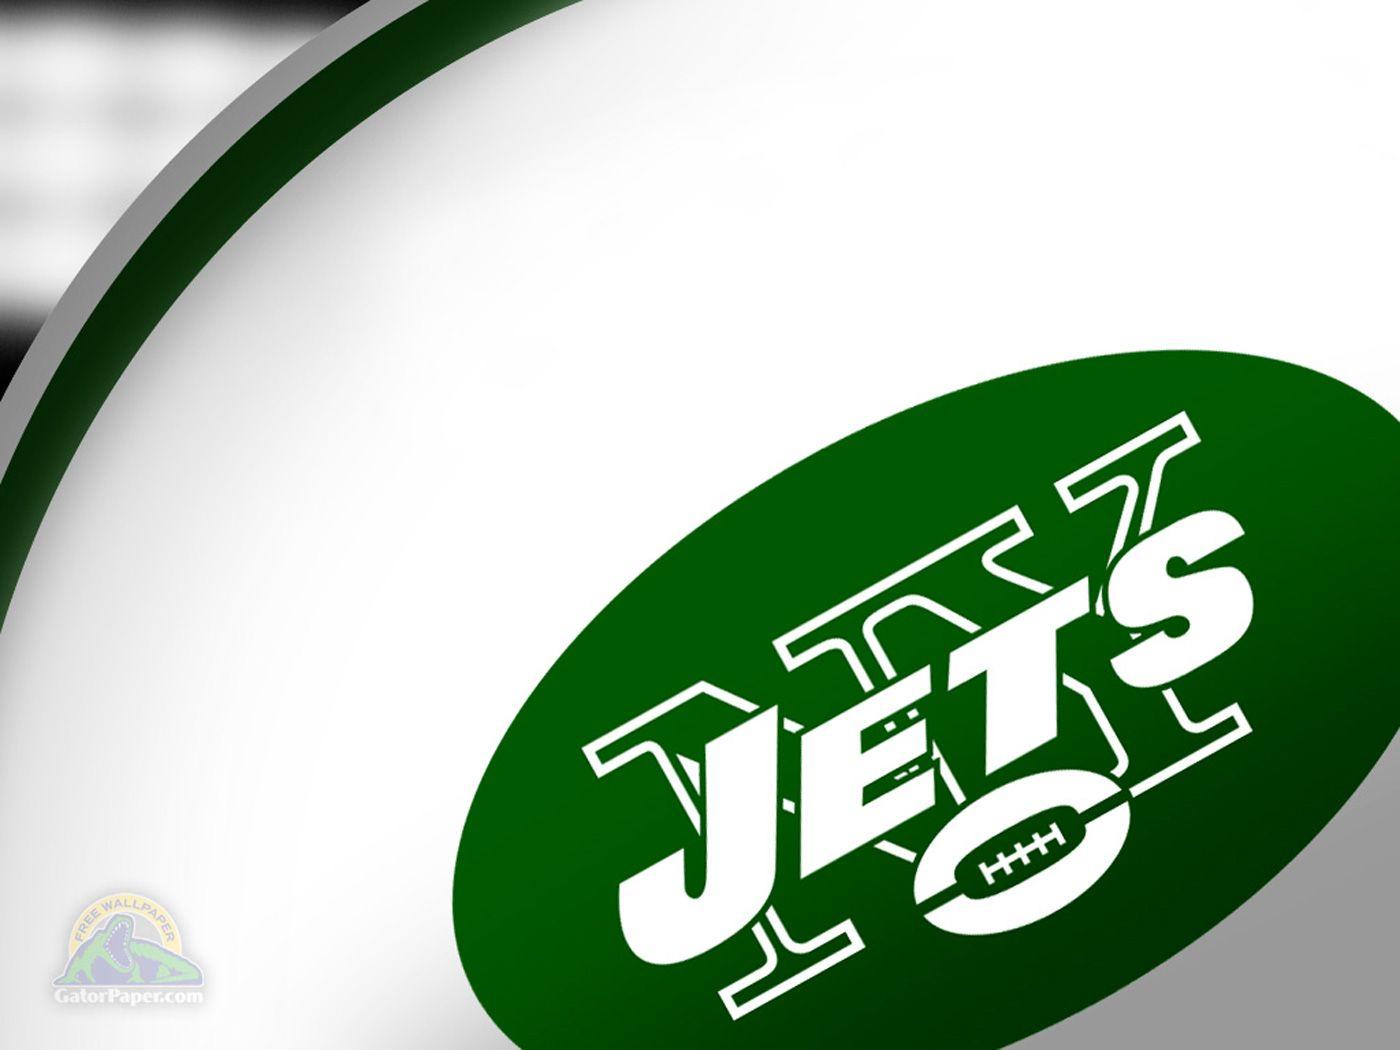 New York Jets wallpaper HD background download desktop • iPhones